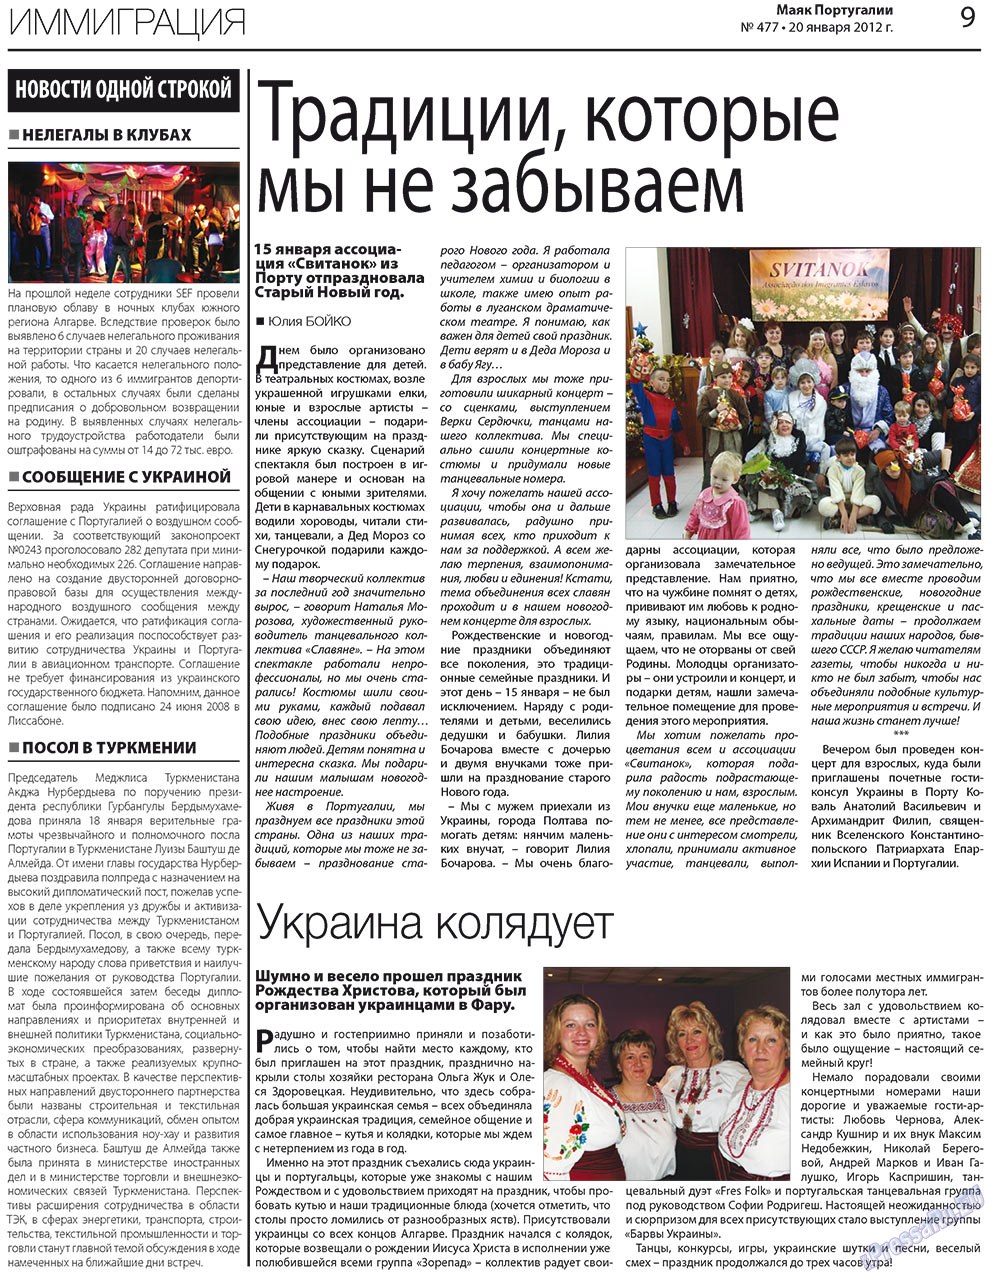 Маяк Португалии (газета). 2012 год, номер 477, стр. 9